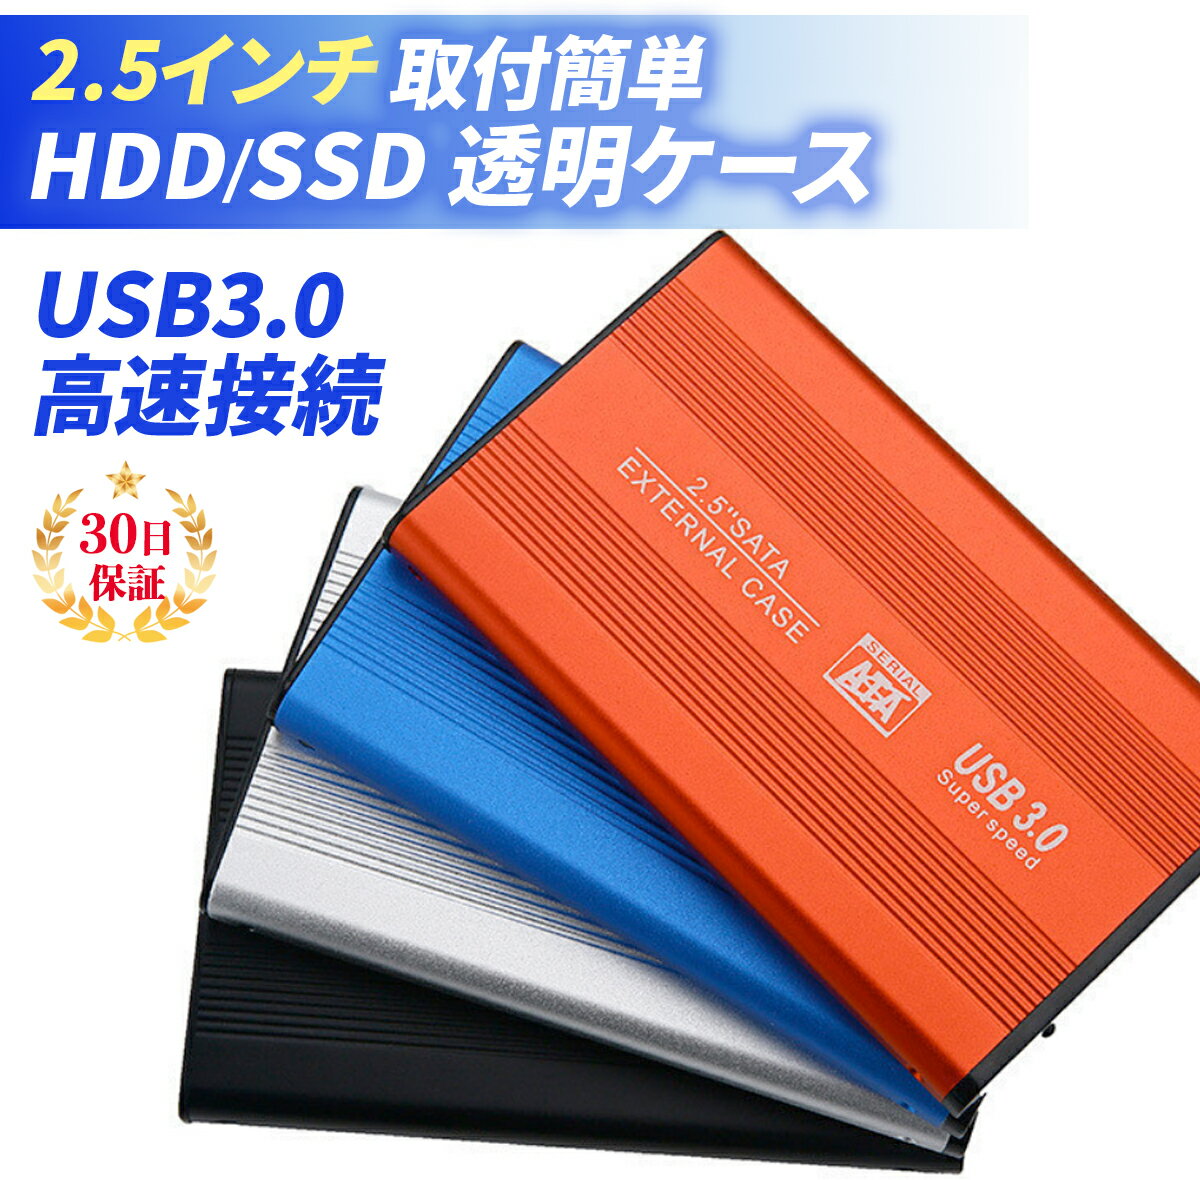 HDDP[X 2.5C` P[X Ot USB3.0 SSD HDD SATA UASP |[^u^ n[hfBXN hCu USB 3.0 y n[hP[X SATAڑ y dsv A~ϋv bh u[ Vo[ ubN